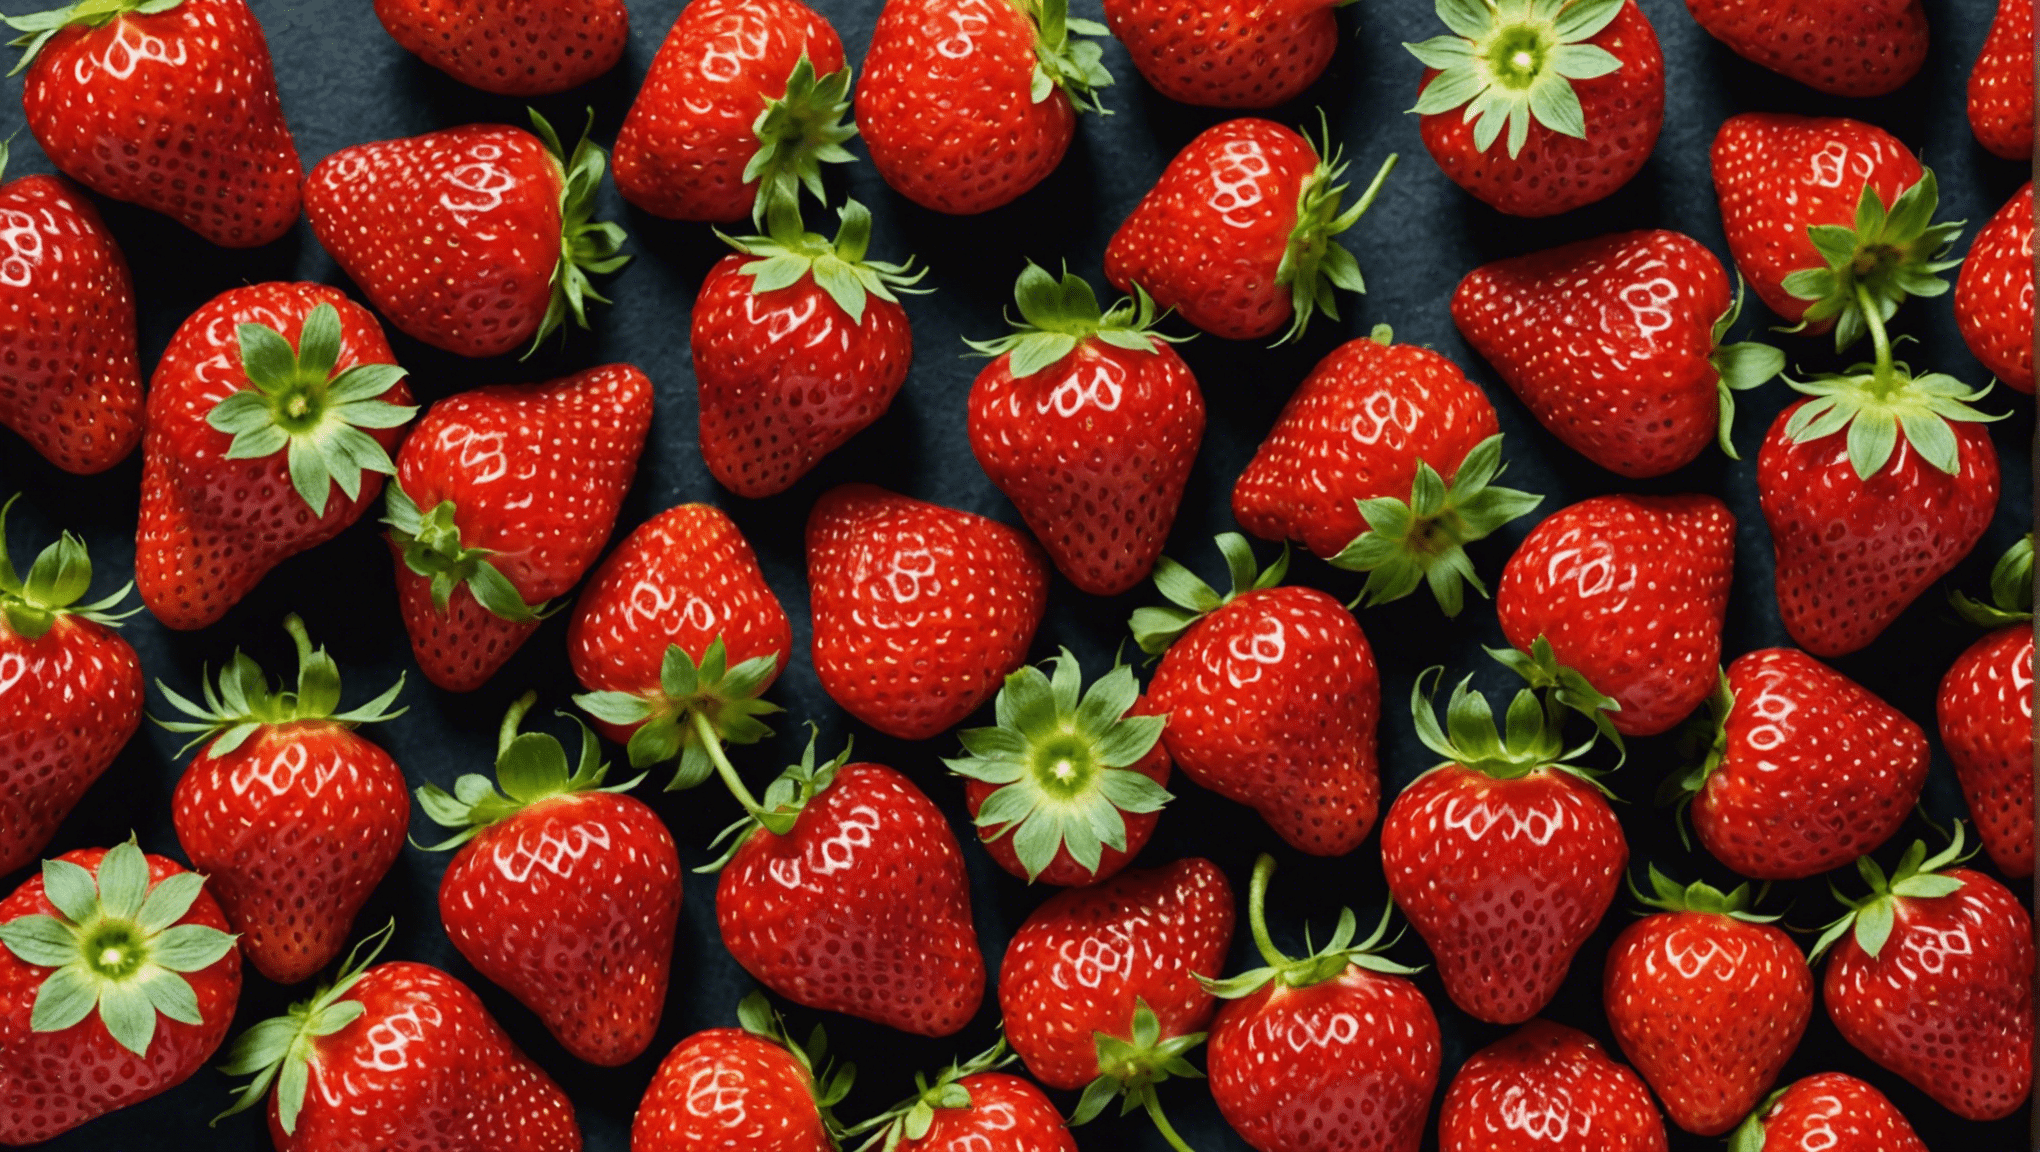 découvrez tous les secrets de la culture des fraises pour obtenir une récolte abondante grâce à notre guide complet, avec des conseils pratiques et des techniques efficaces.